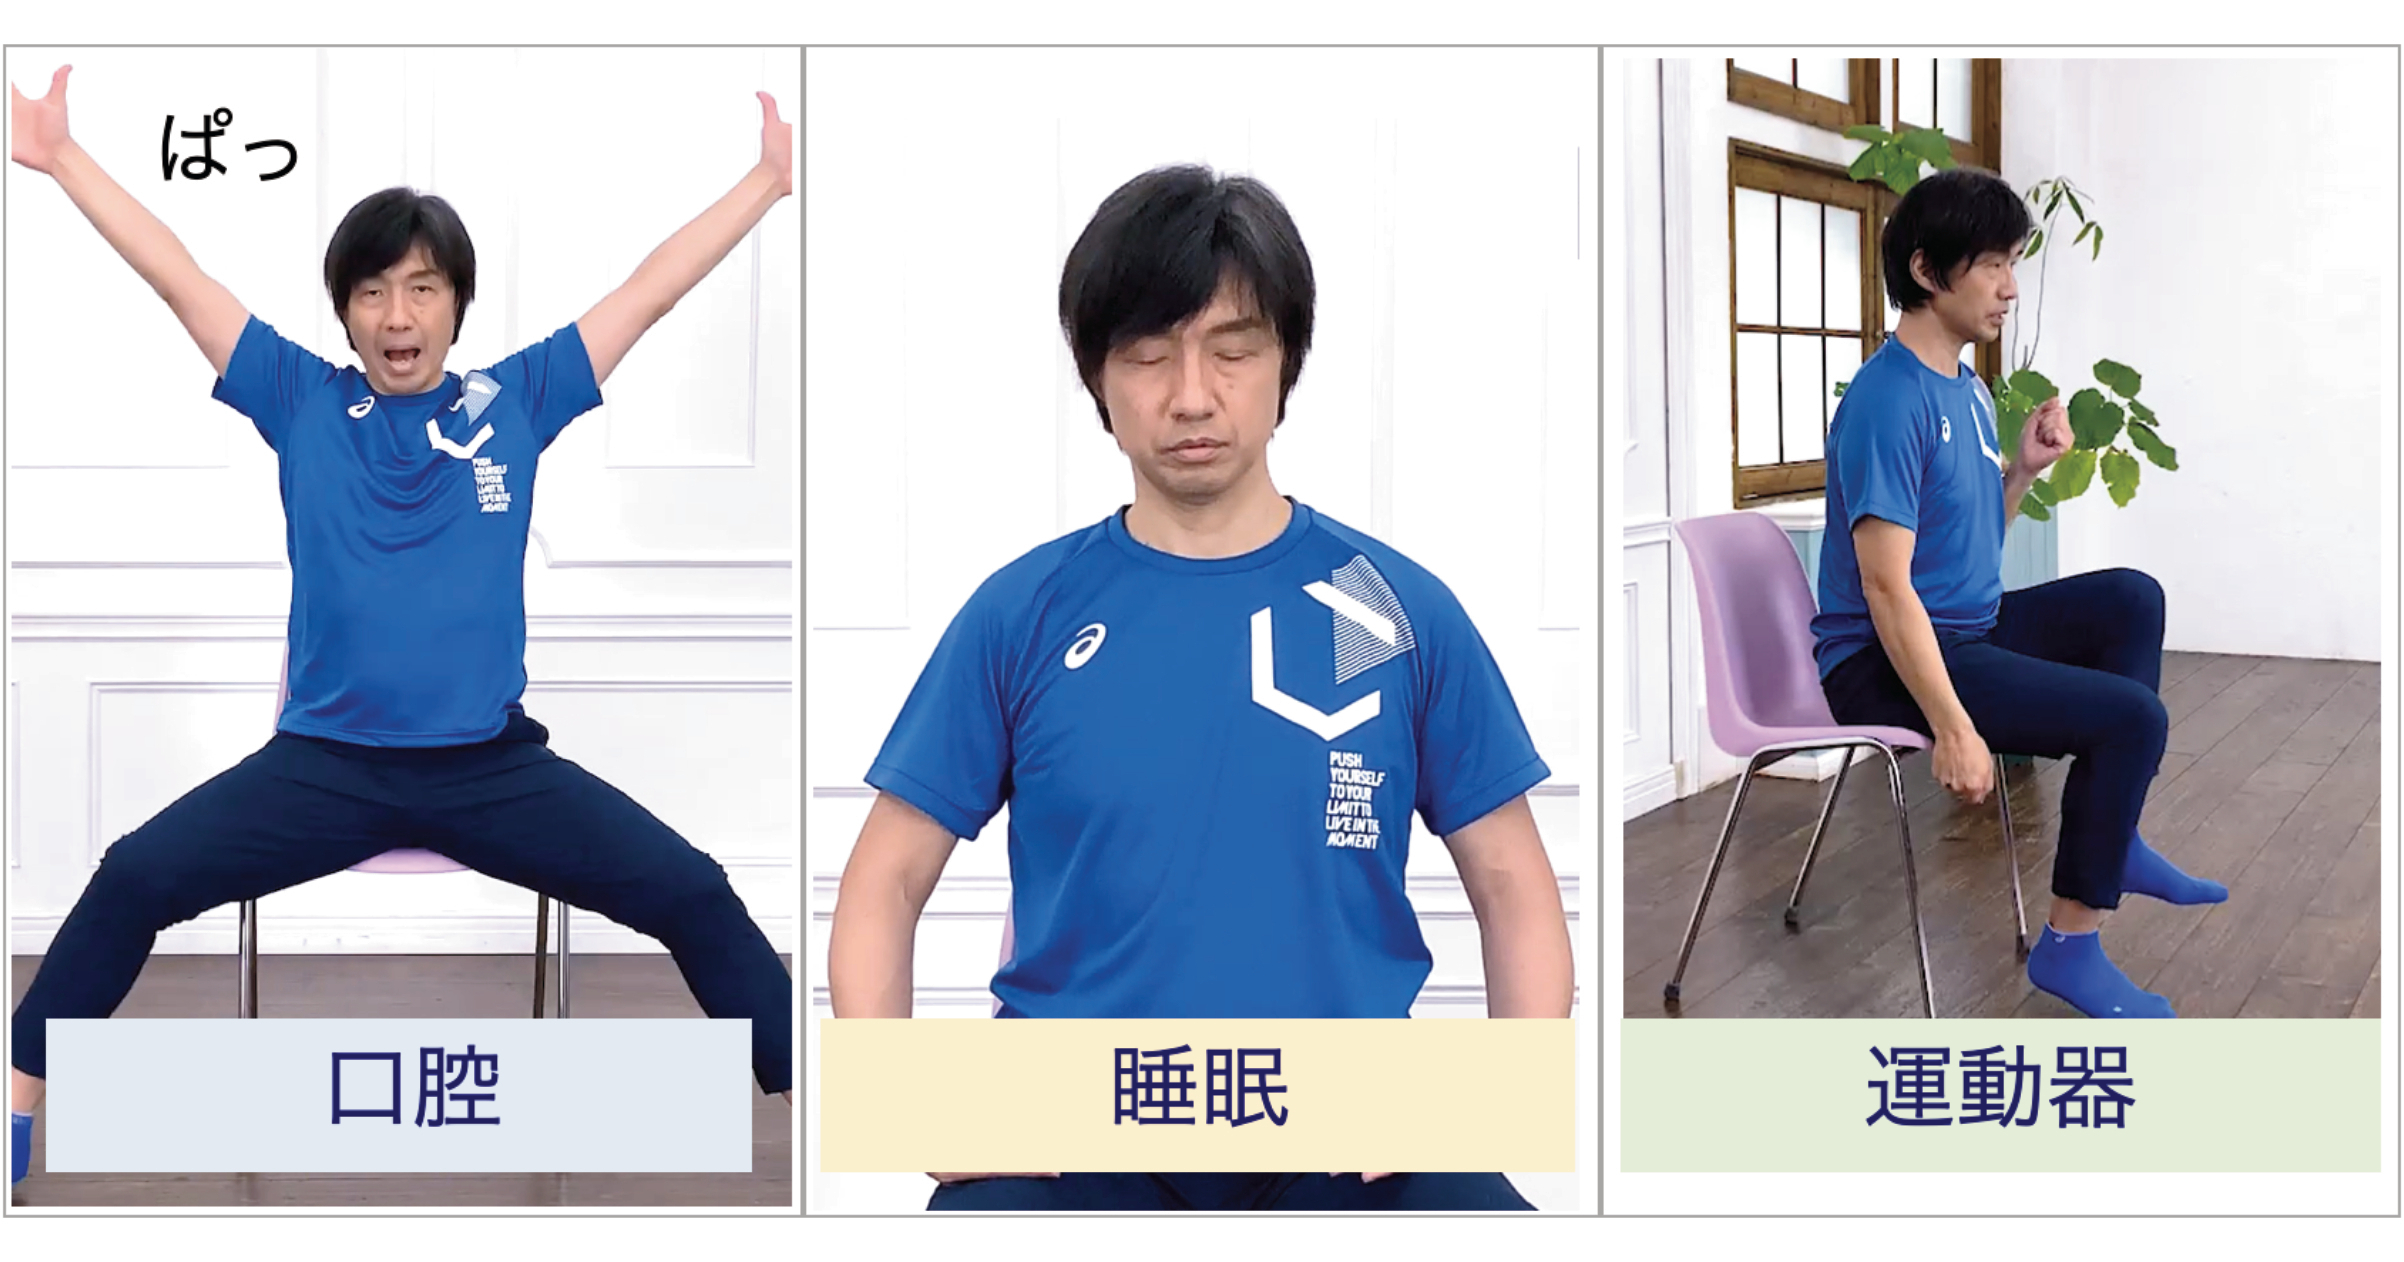 2022年3月24日(木)東京表参道で開催　
「Femtech Japan 2022／Femcare Japan 2022」　
2/1(火)～来場予約募集開始・パンフレット広告枠を新設